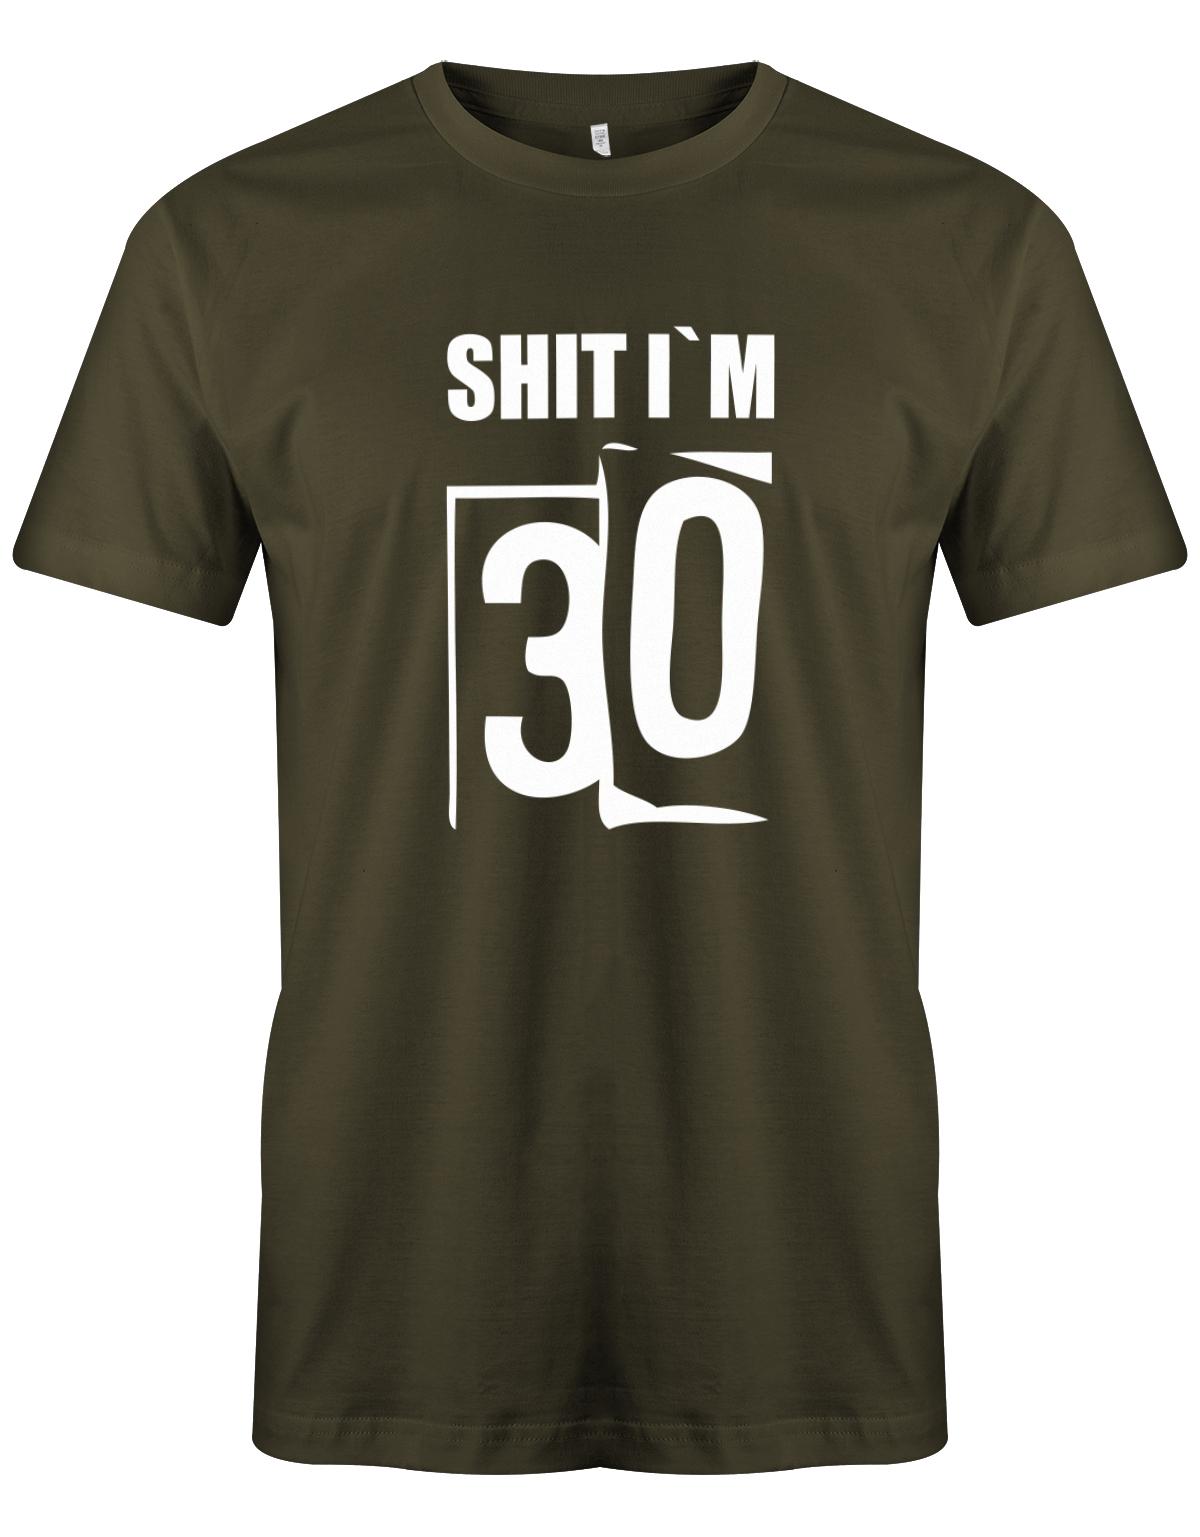 Lustiges T-Shirt zum 30 Geburtstag für den Mann Bedruckt mit: Shirt I´m 30 Thirty. Das T Shirt 30 Geburtstag Mann Lustig ist eine super Geschenkidee für alle 30 Jährigen. Man wird nur einmal 30 Jahre. 30 geburtstag Männer Shirt ✓ 1993 geburtstag shirt ✓ t-shirt zum 30 geburtstag mann ✓ shirt 30 mann Army